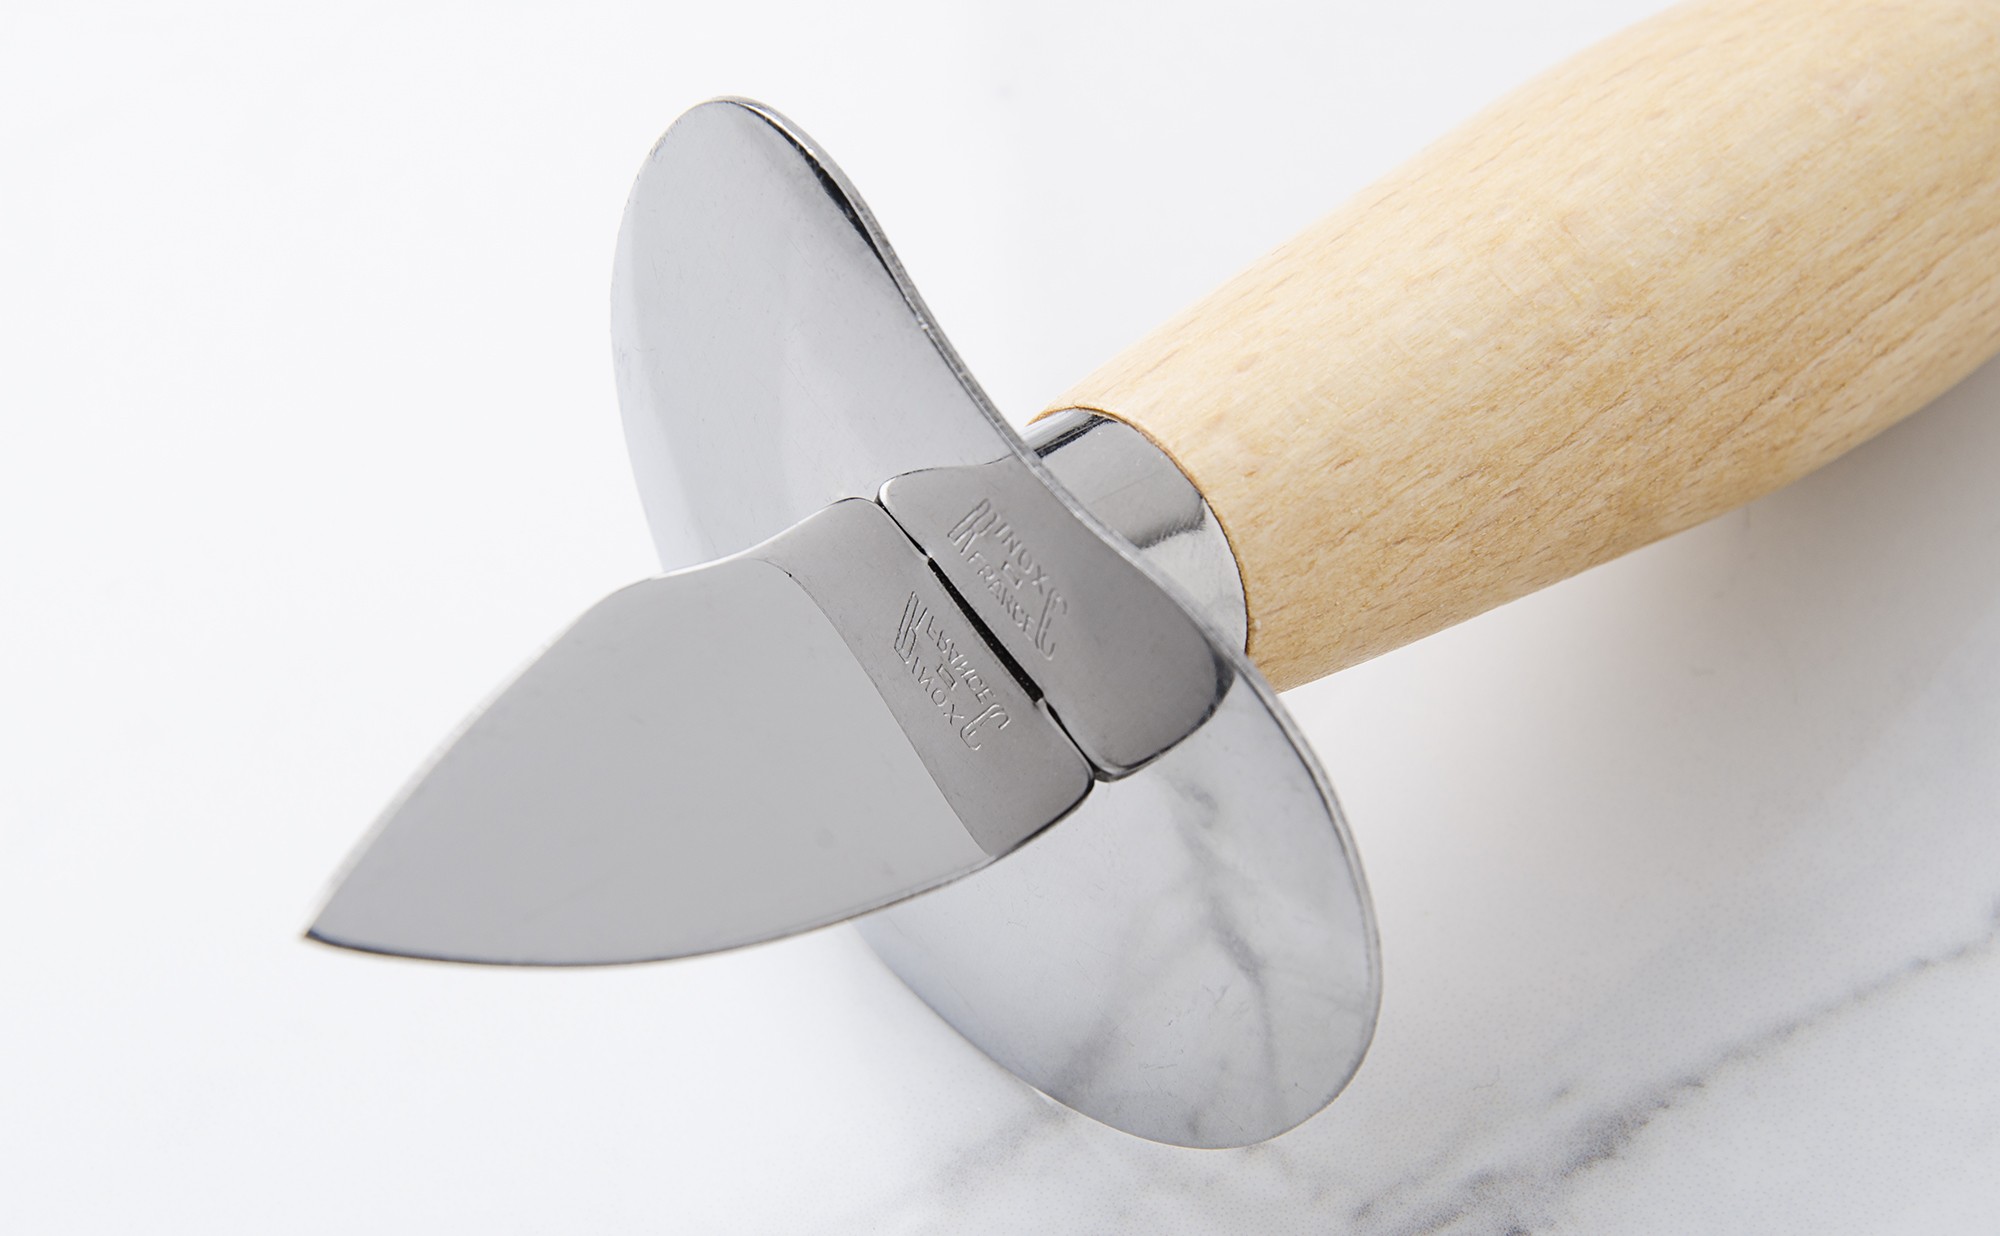 Couteau à huîtres professionnel en inox - Coup de coeur en cuisine